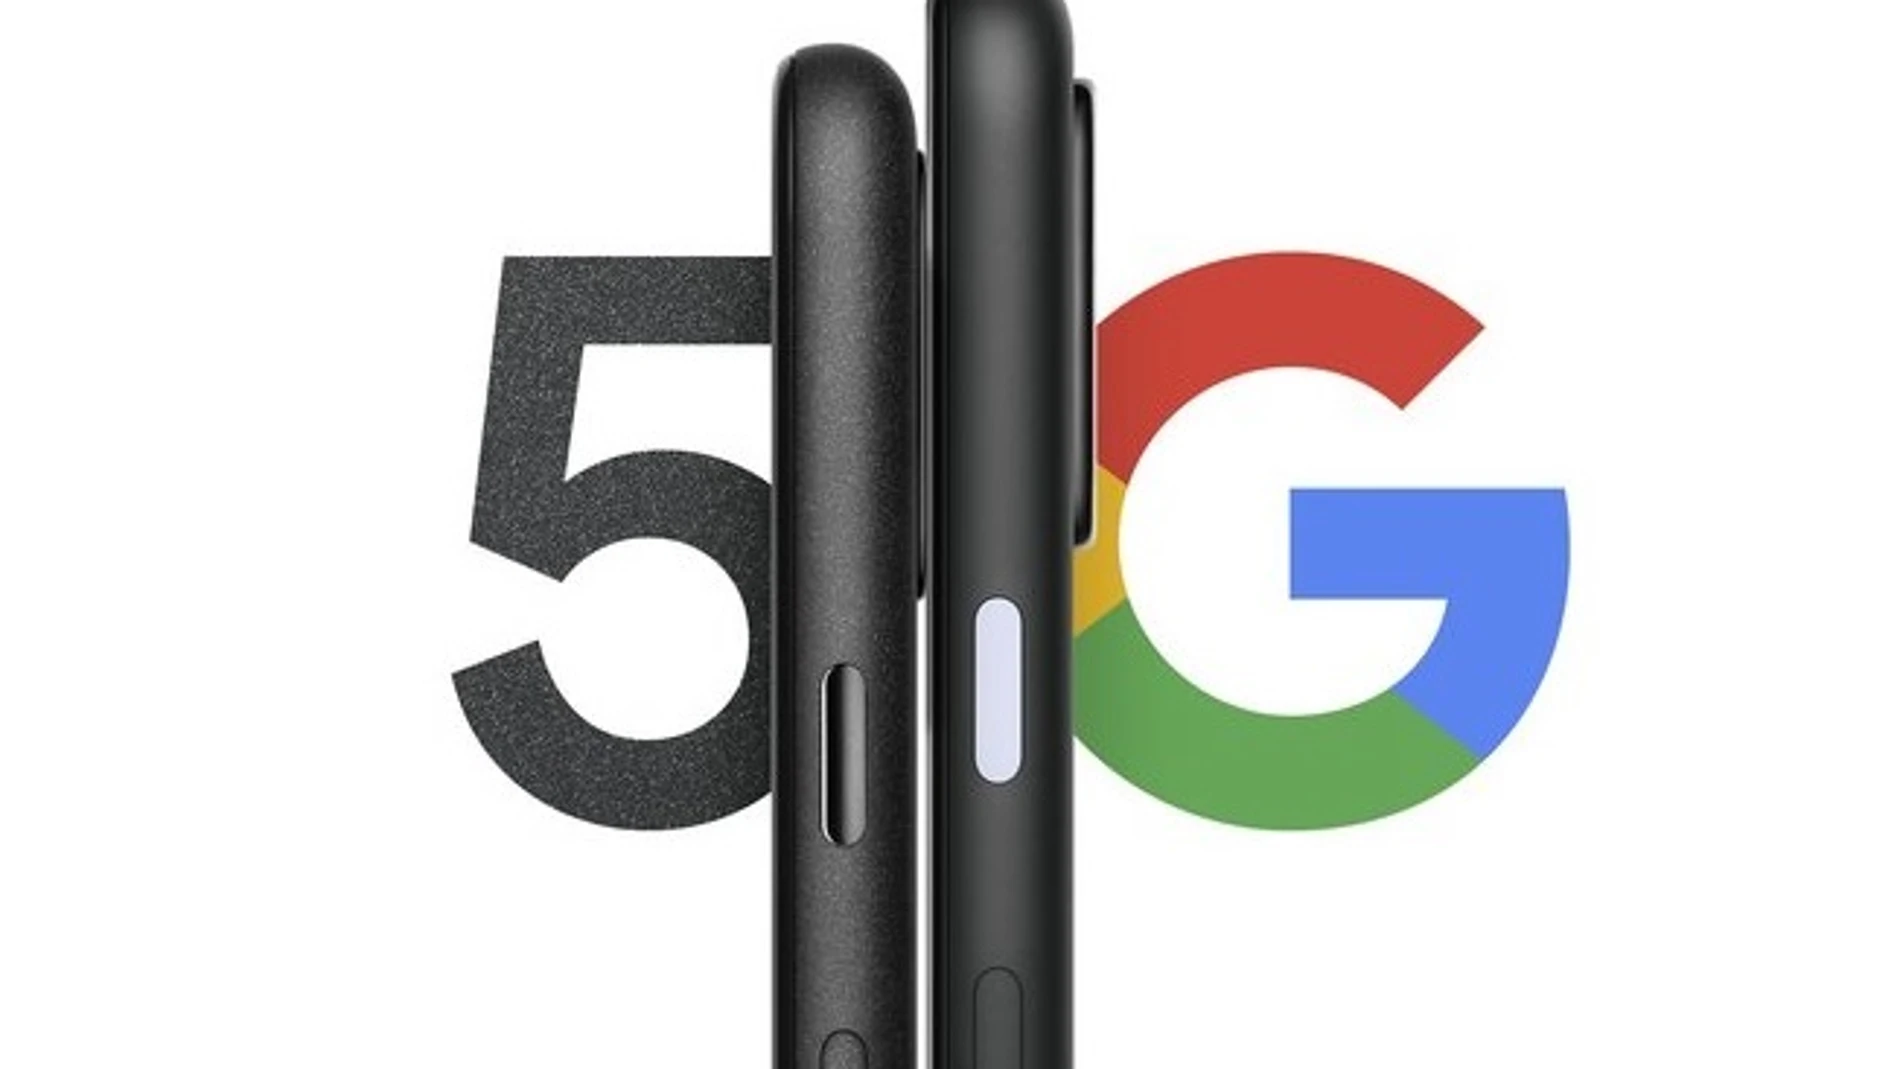 Google lanzará en otoño su buque insignia Pixel 5, compatible con 5G